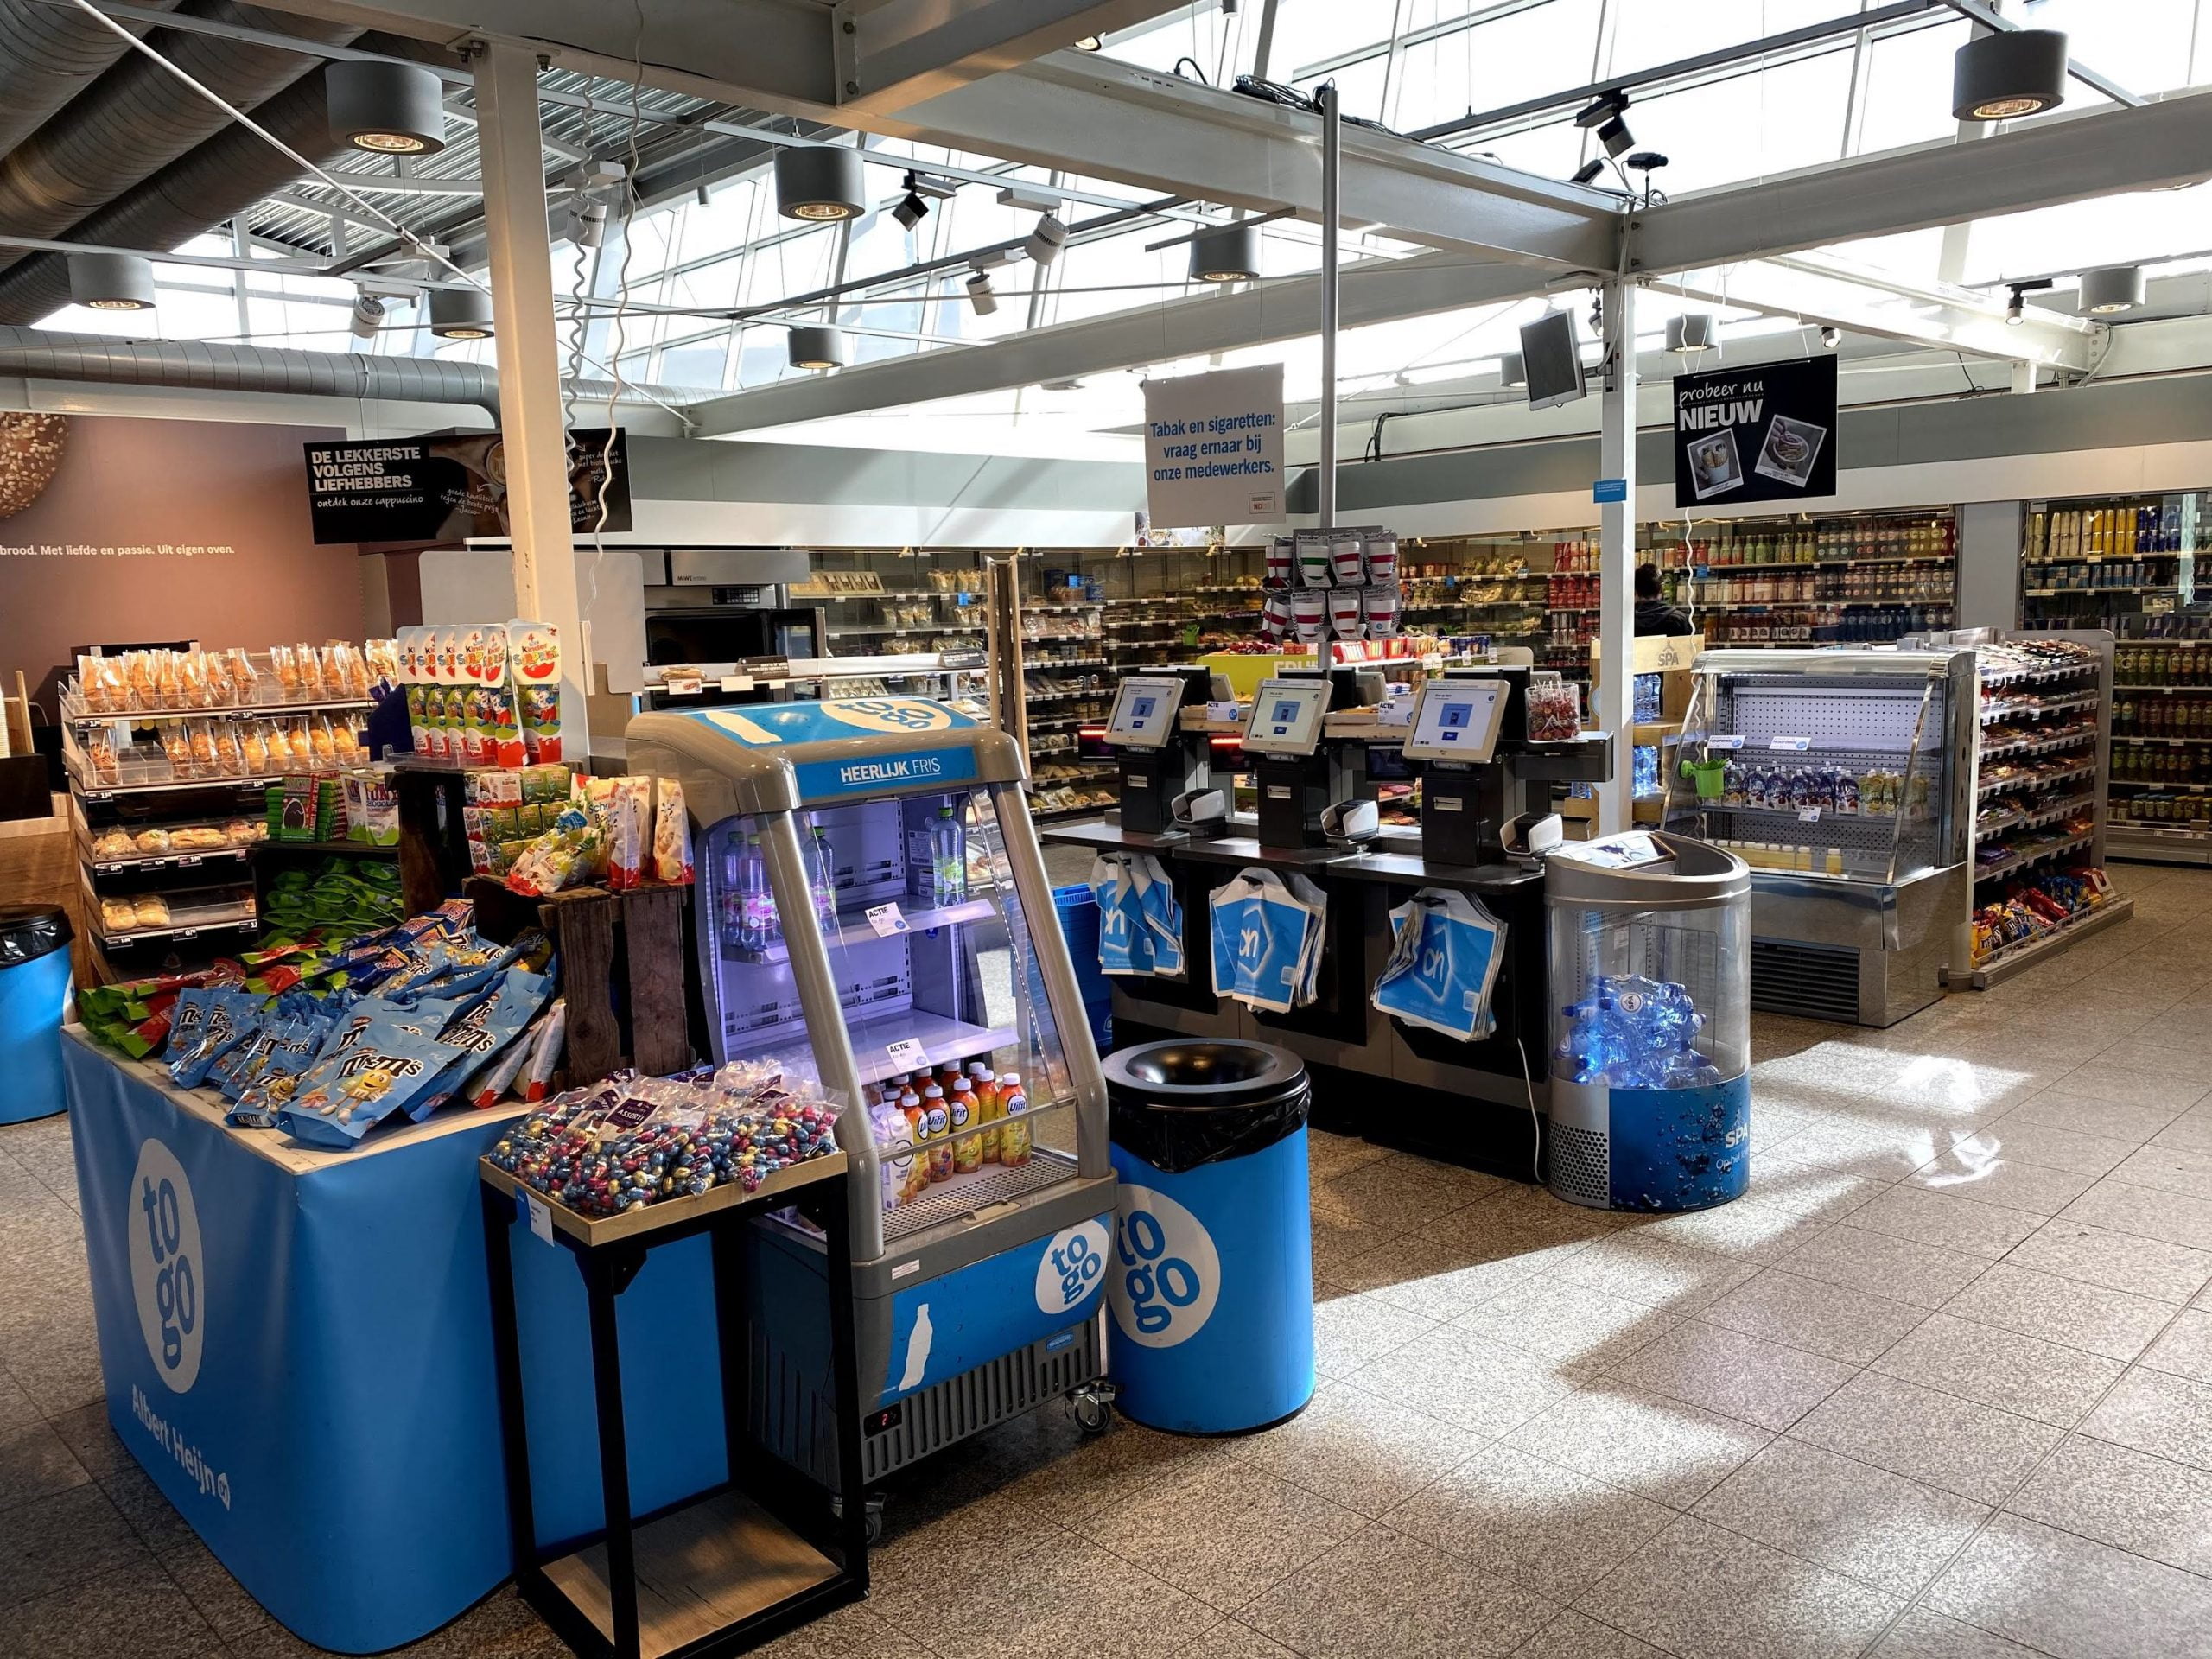 Chiar și supermarketul de pe Aeroportul Eindhoven este pustiu...